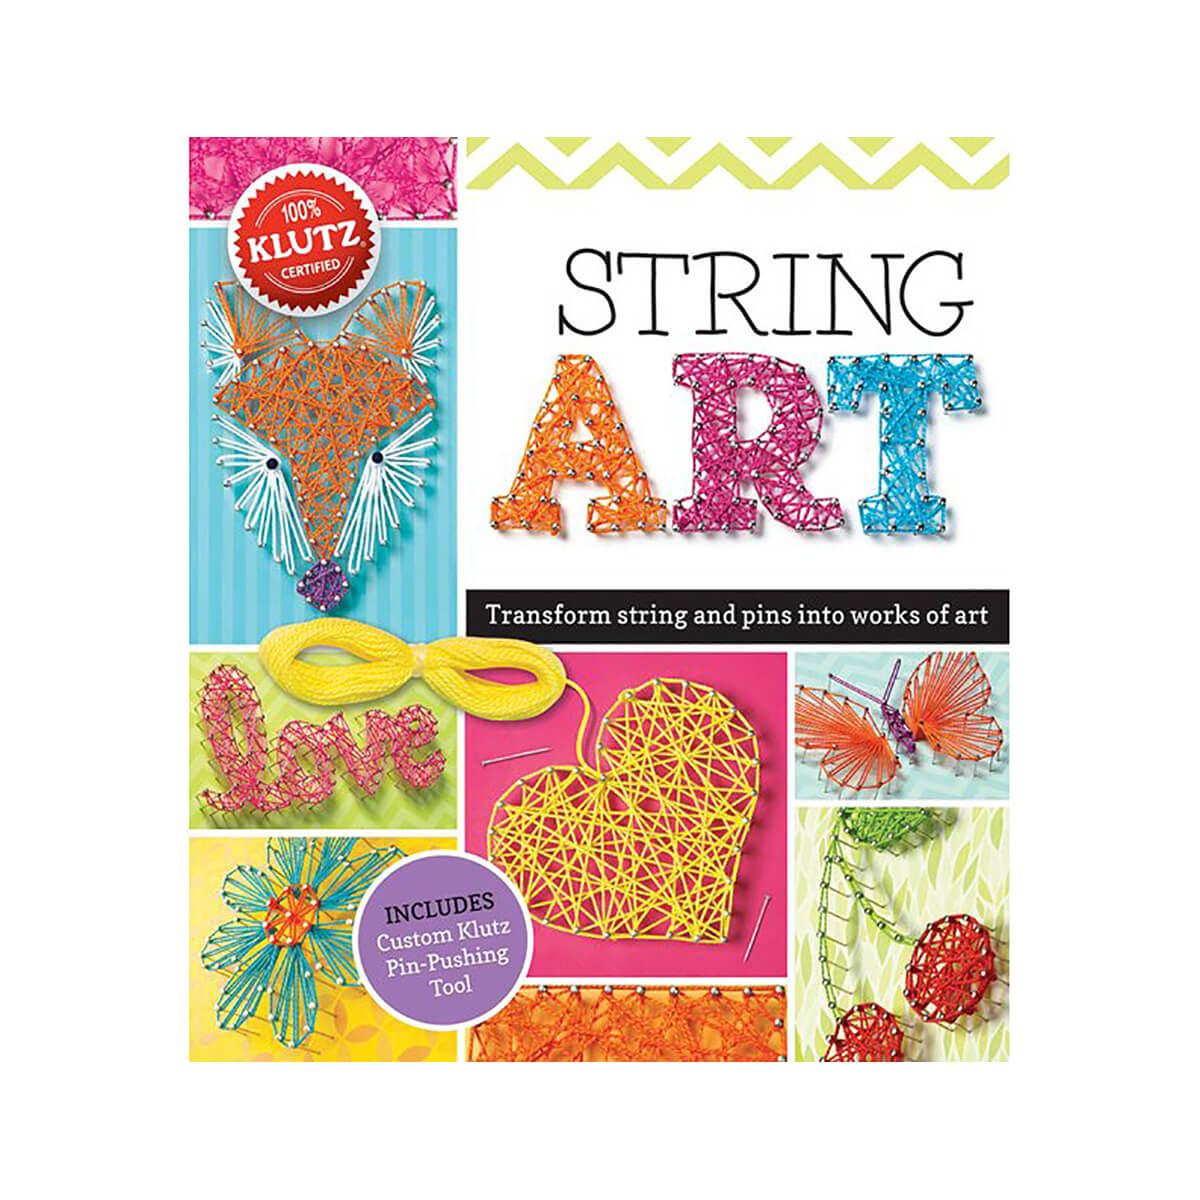  String Art Kit